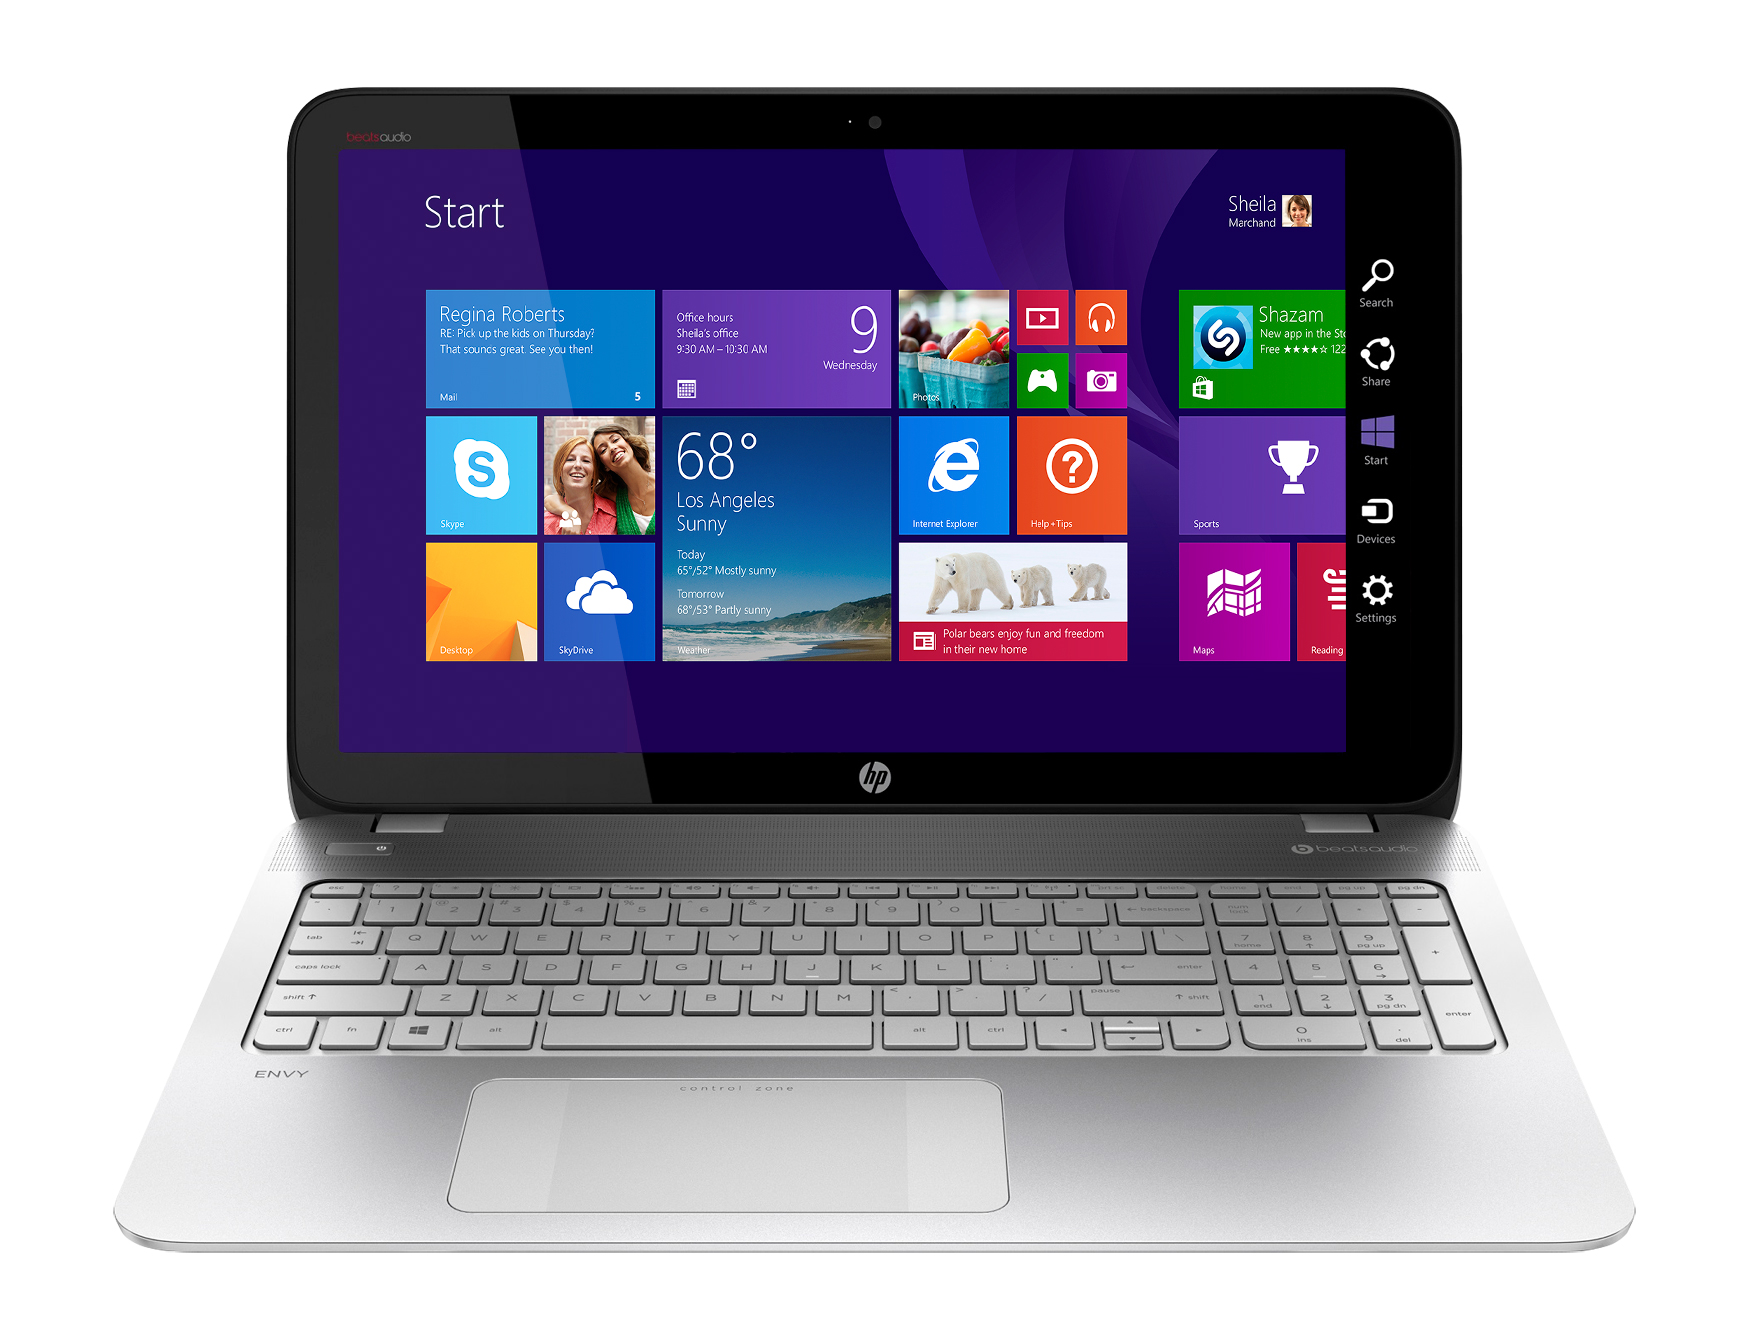 HP Envy Touchsmart Laptop at Best Buy: A Gamer’s Dream! #AMDFX